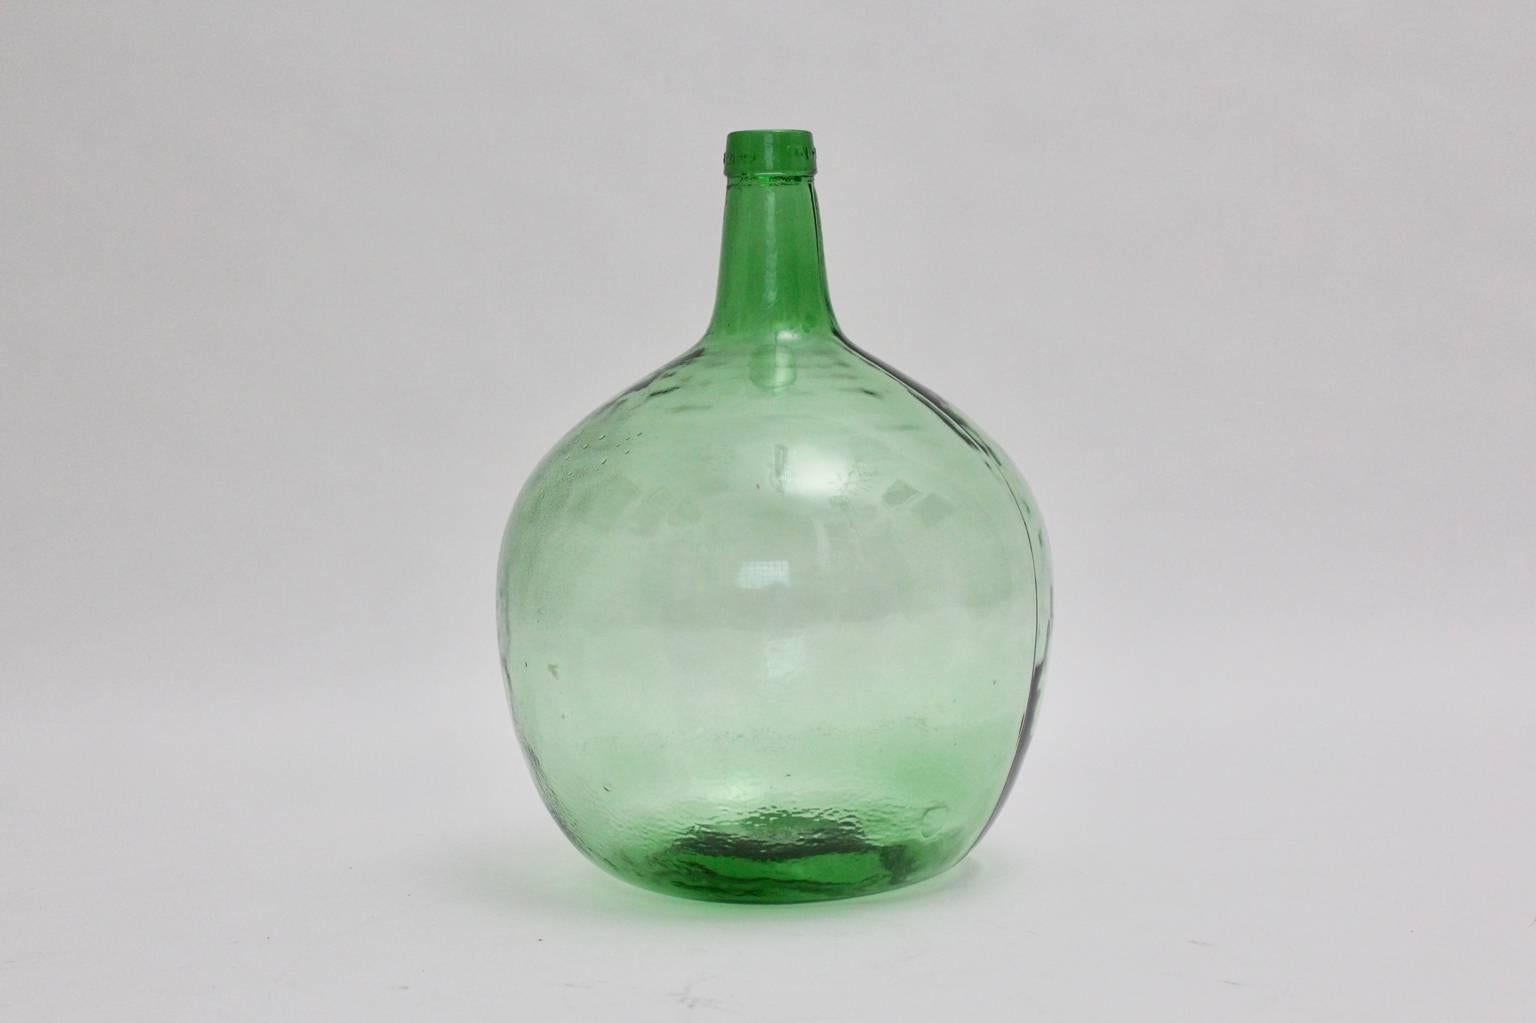 Vase ou Demijohn vert de Viresa, années 1970, qui est très décoratif et conviendrait parfaitement comme vase à fleurs.
Grâce à sa magnifique couleur vert émeraude et à sa forme ronde, ce vase en verre vintage serait un détail étonnant dans un